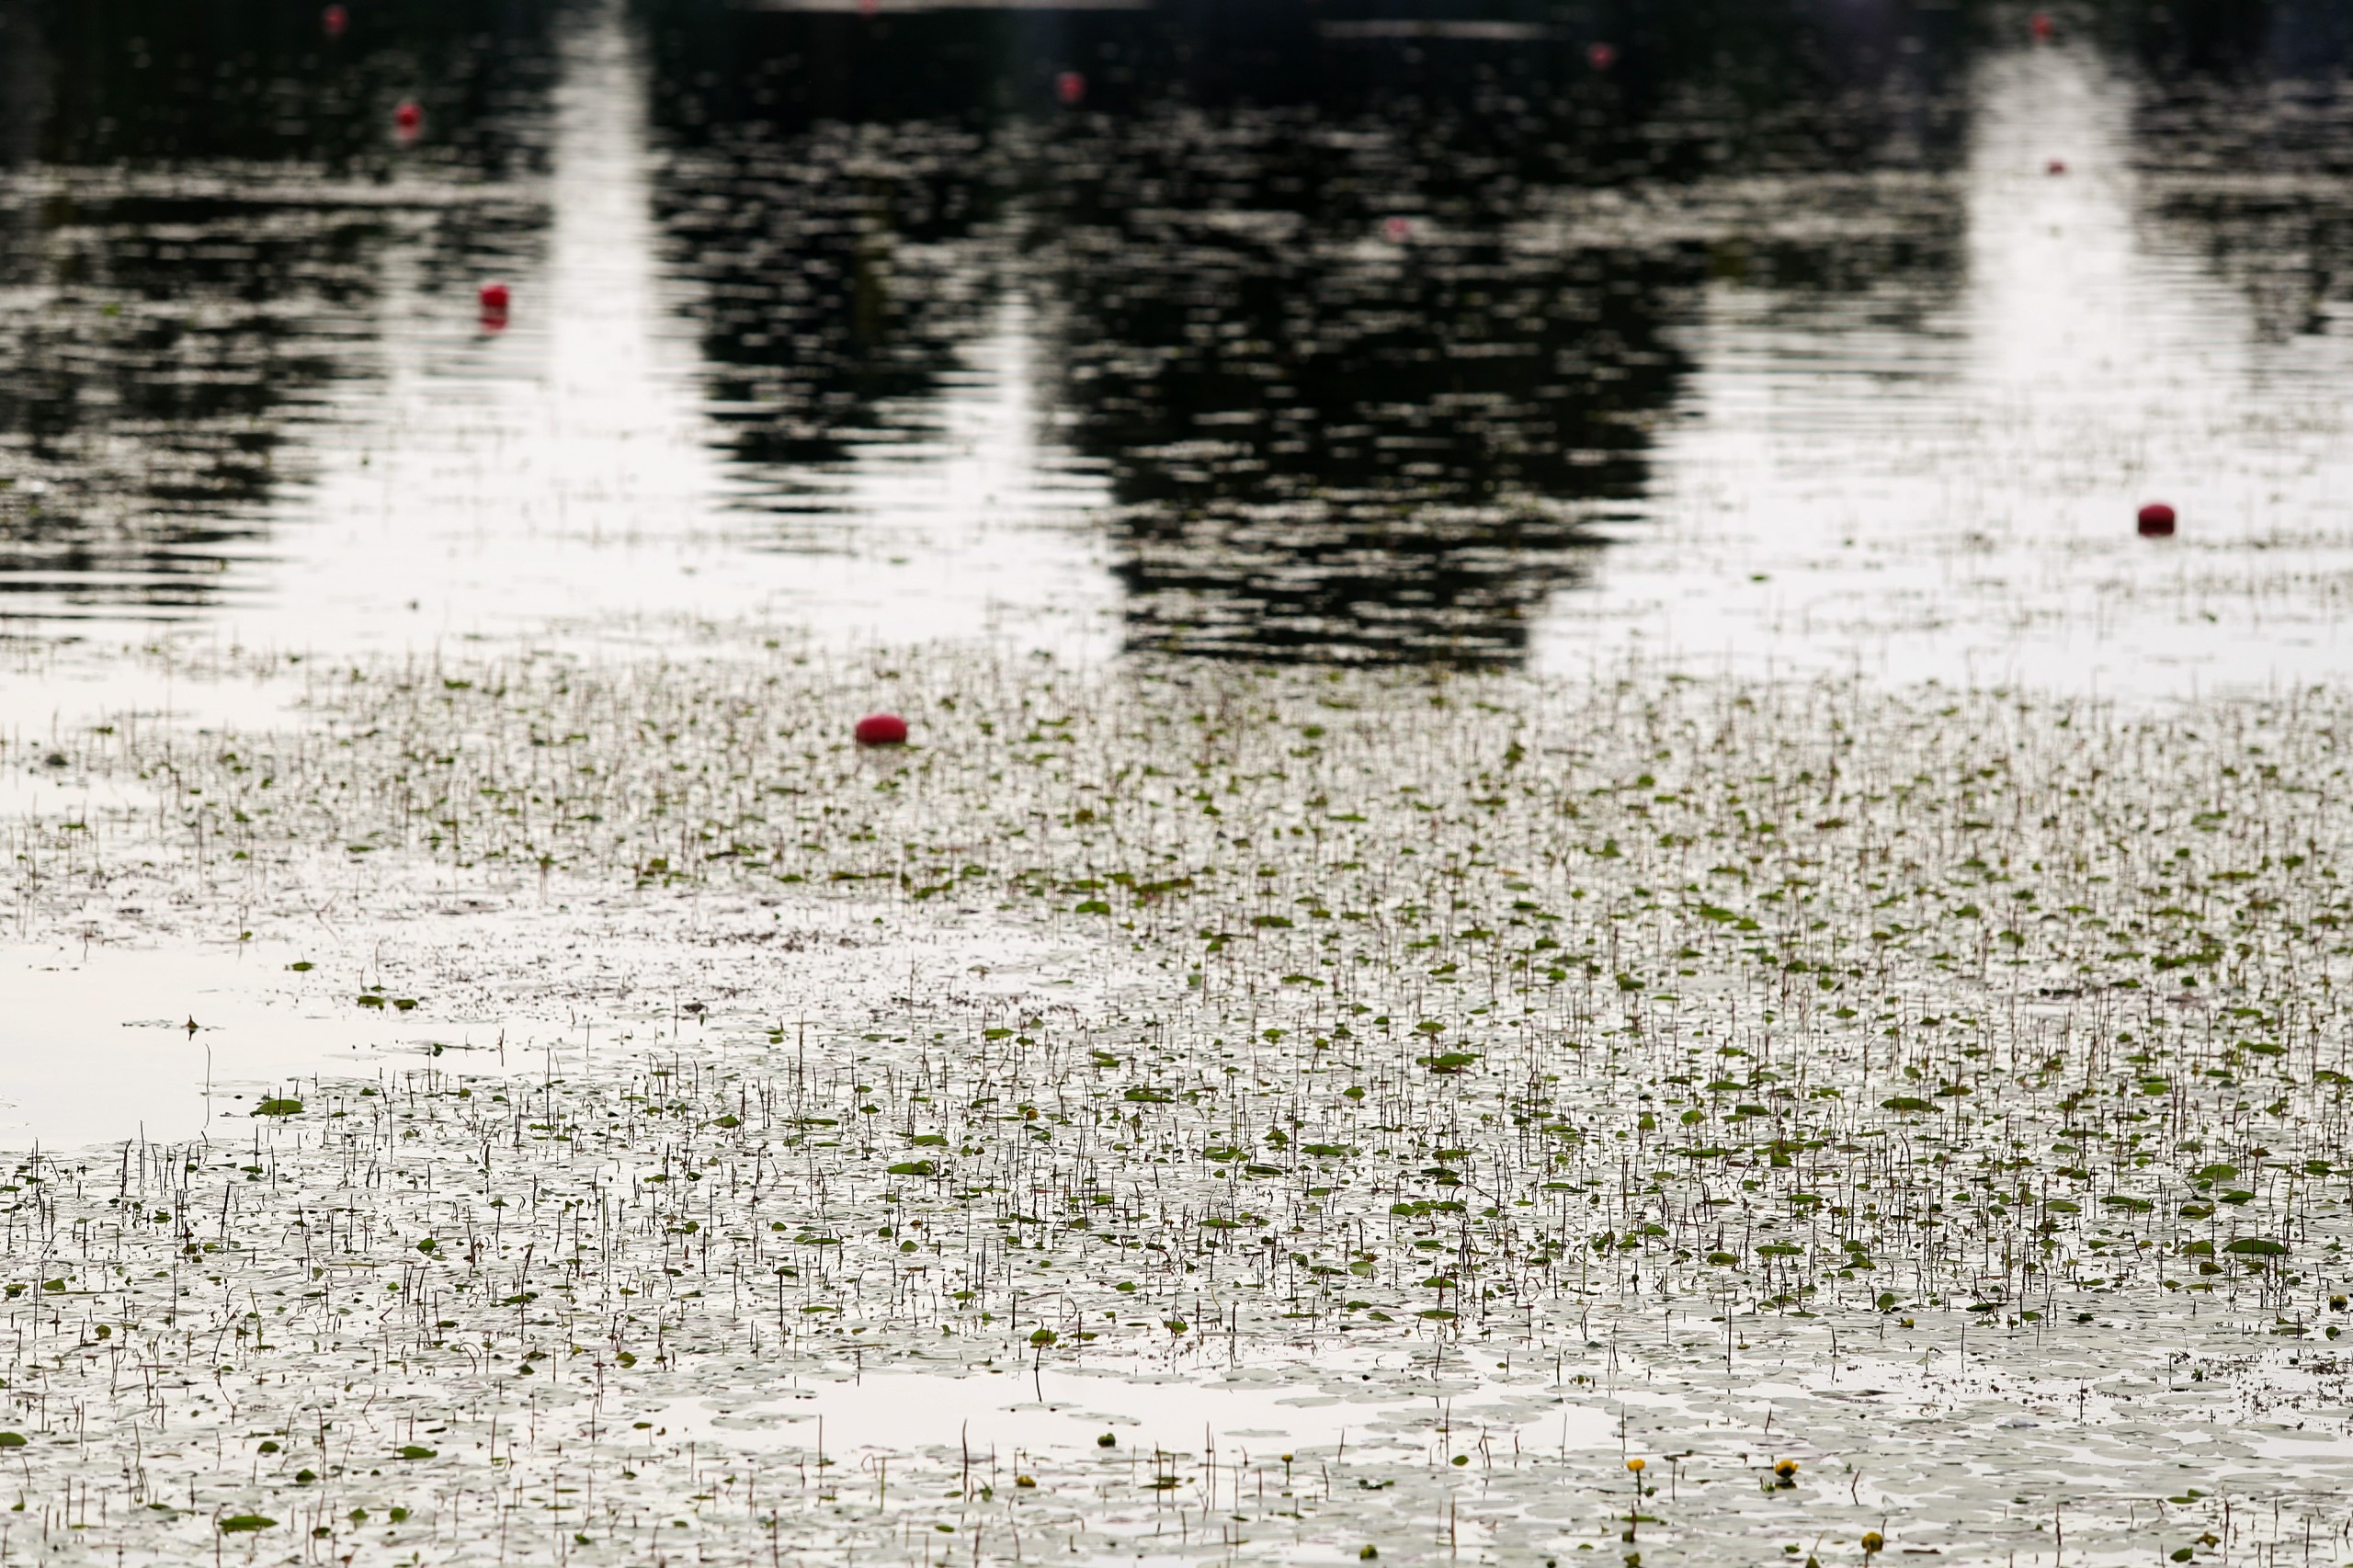 27.07.2021., Zagreb - Jarunsko jezero cvijeta te ima puno lopoca na veslackoj stazi. rPhoto: Luka Stanzl/PIXSELL